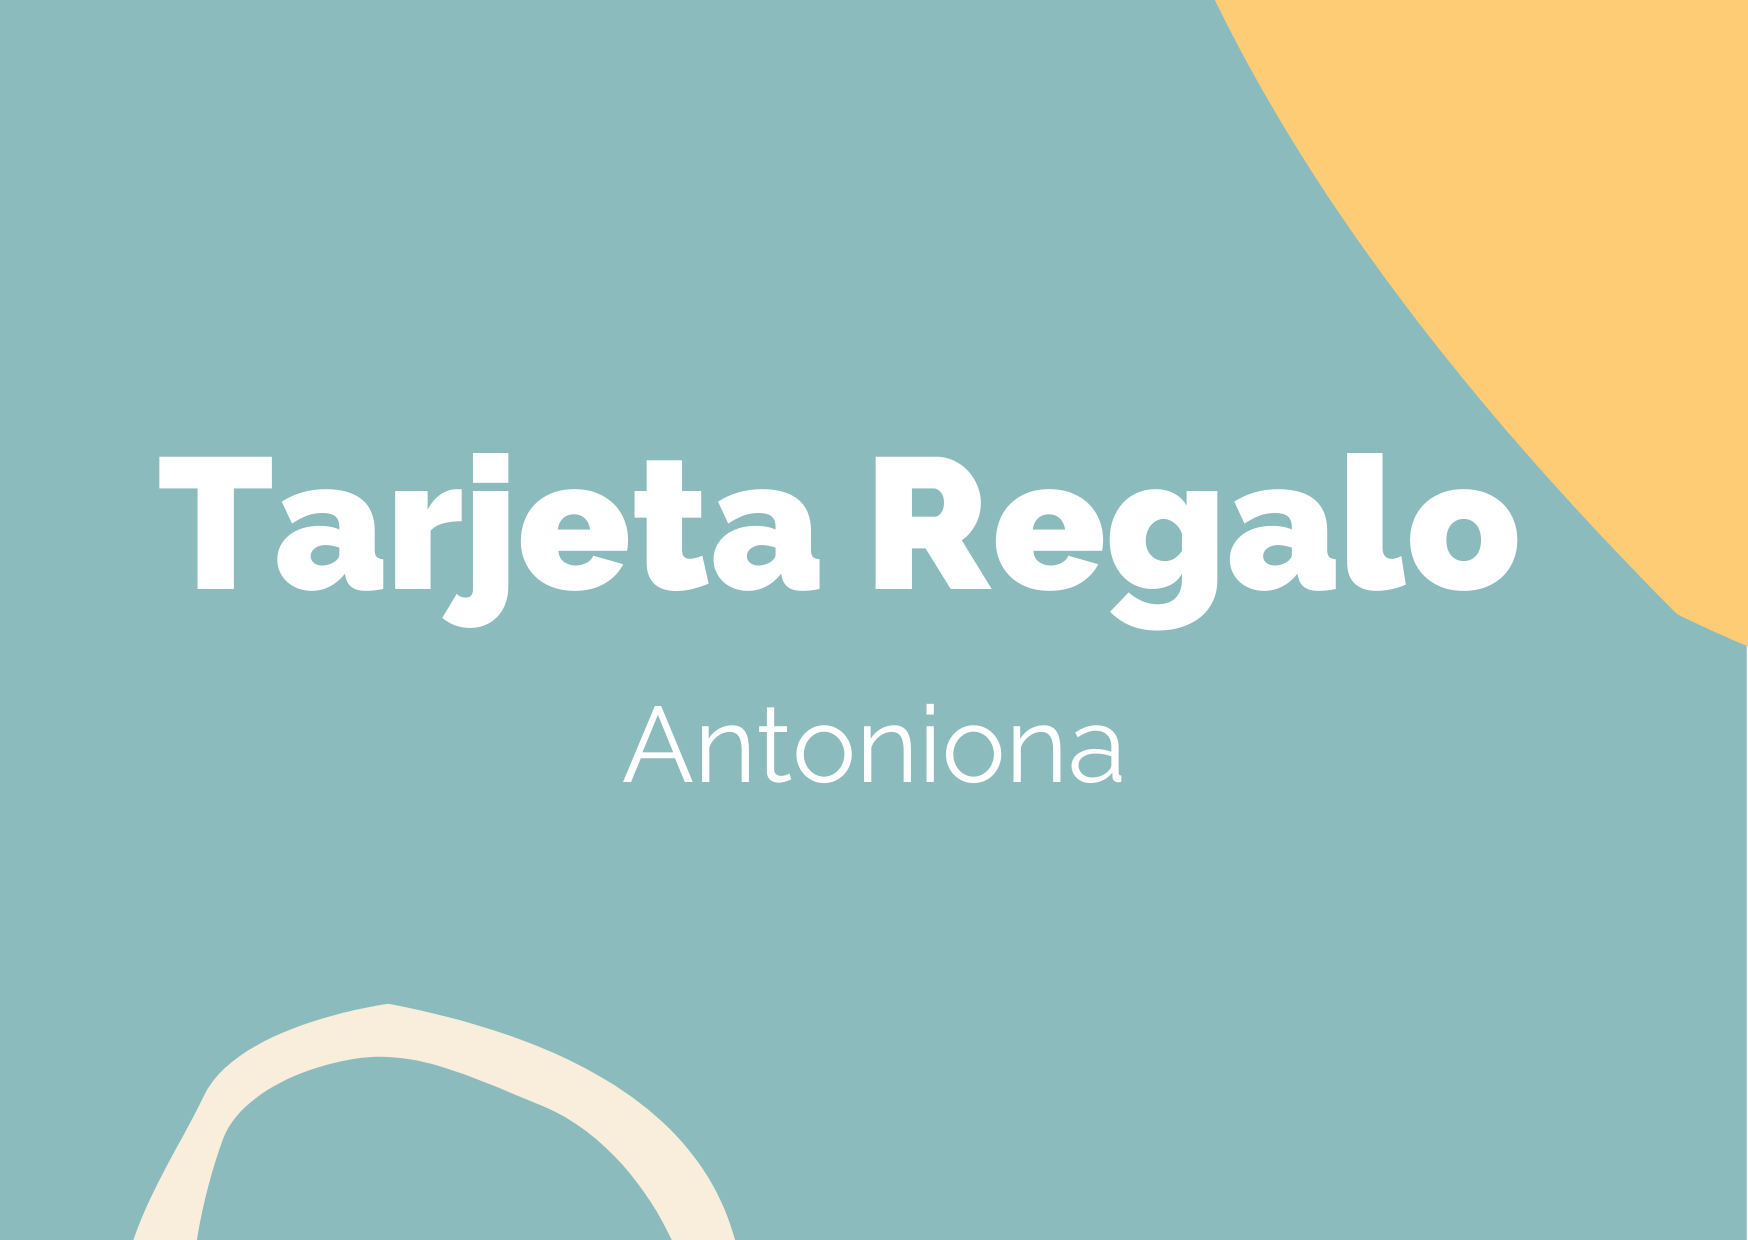 Antoniona Tarjeta Regalo